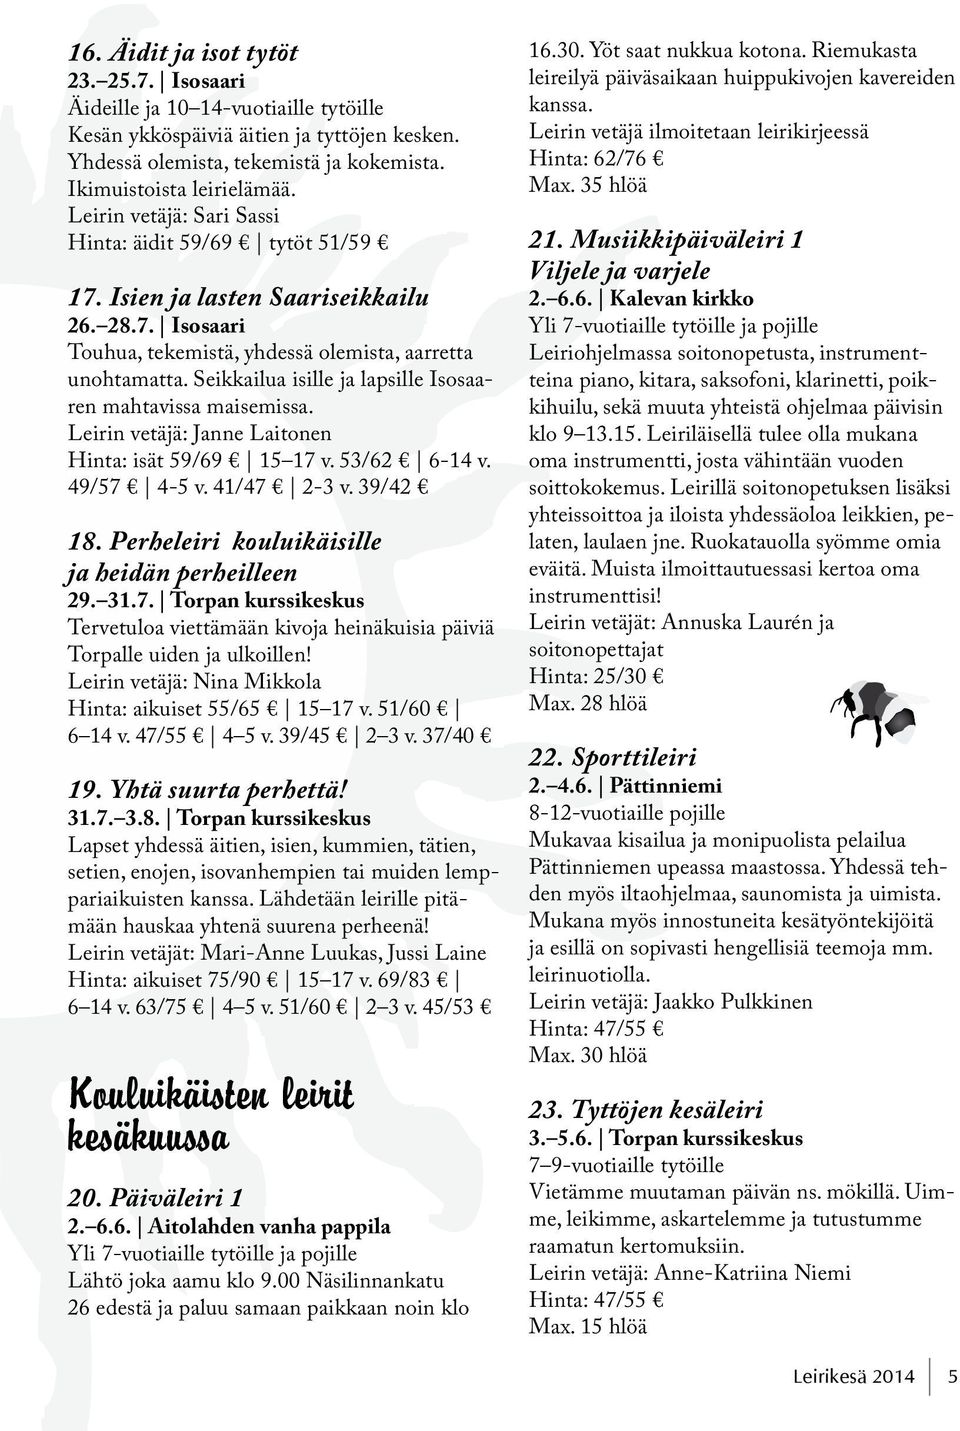 Seikkailua isille ja lapsille Isosaaren mahtavissa maisemissa. Leirin vetäjä: Janne Laitonen Hinta: isät 59/69 15 17 v. 53/62 6-14 v. 49/57 4-5 v. 41/47 2-3 v. 39/42 18.